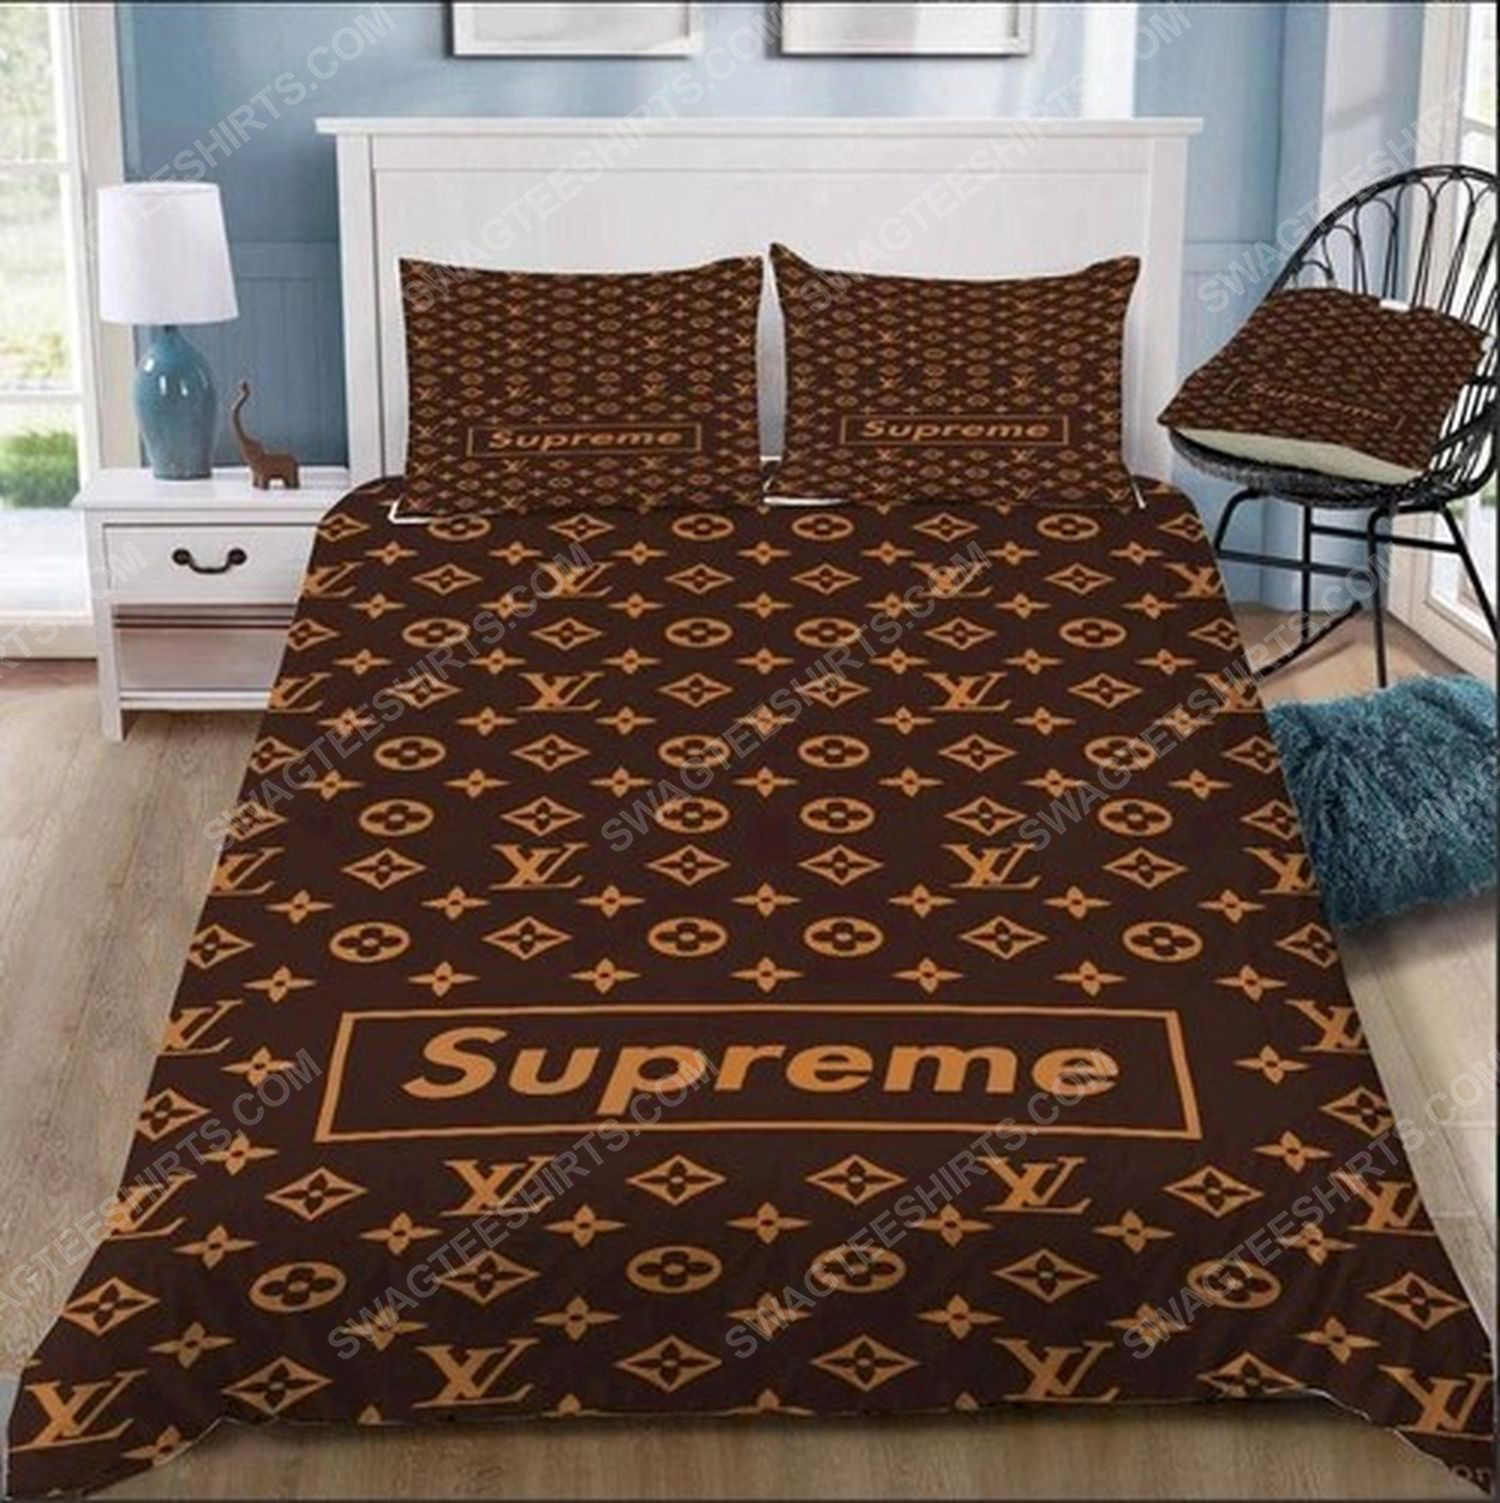 Lv monogram symbols full print duvet cover bedding set 1